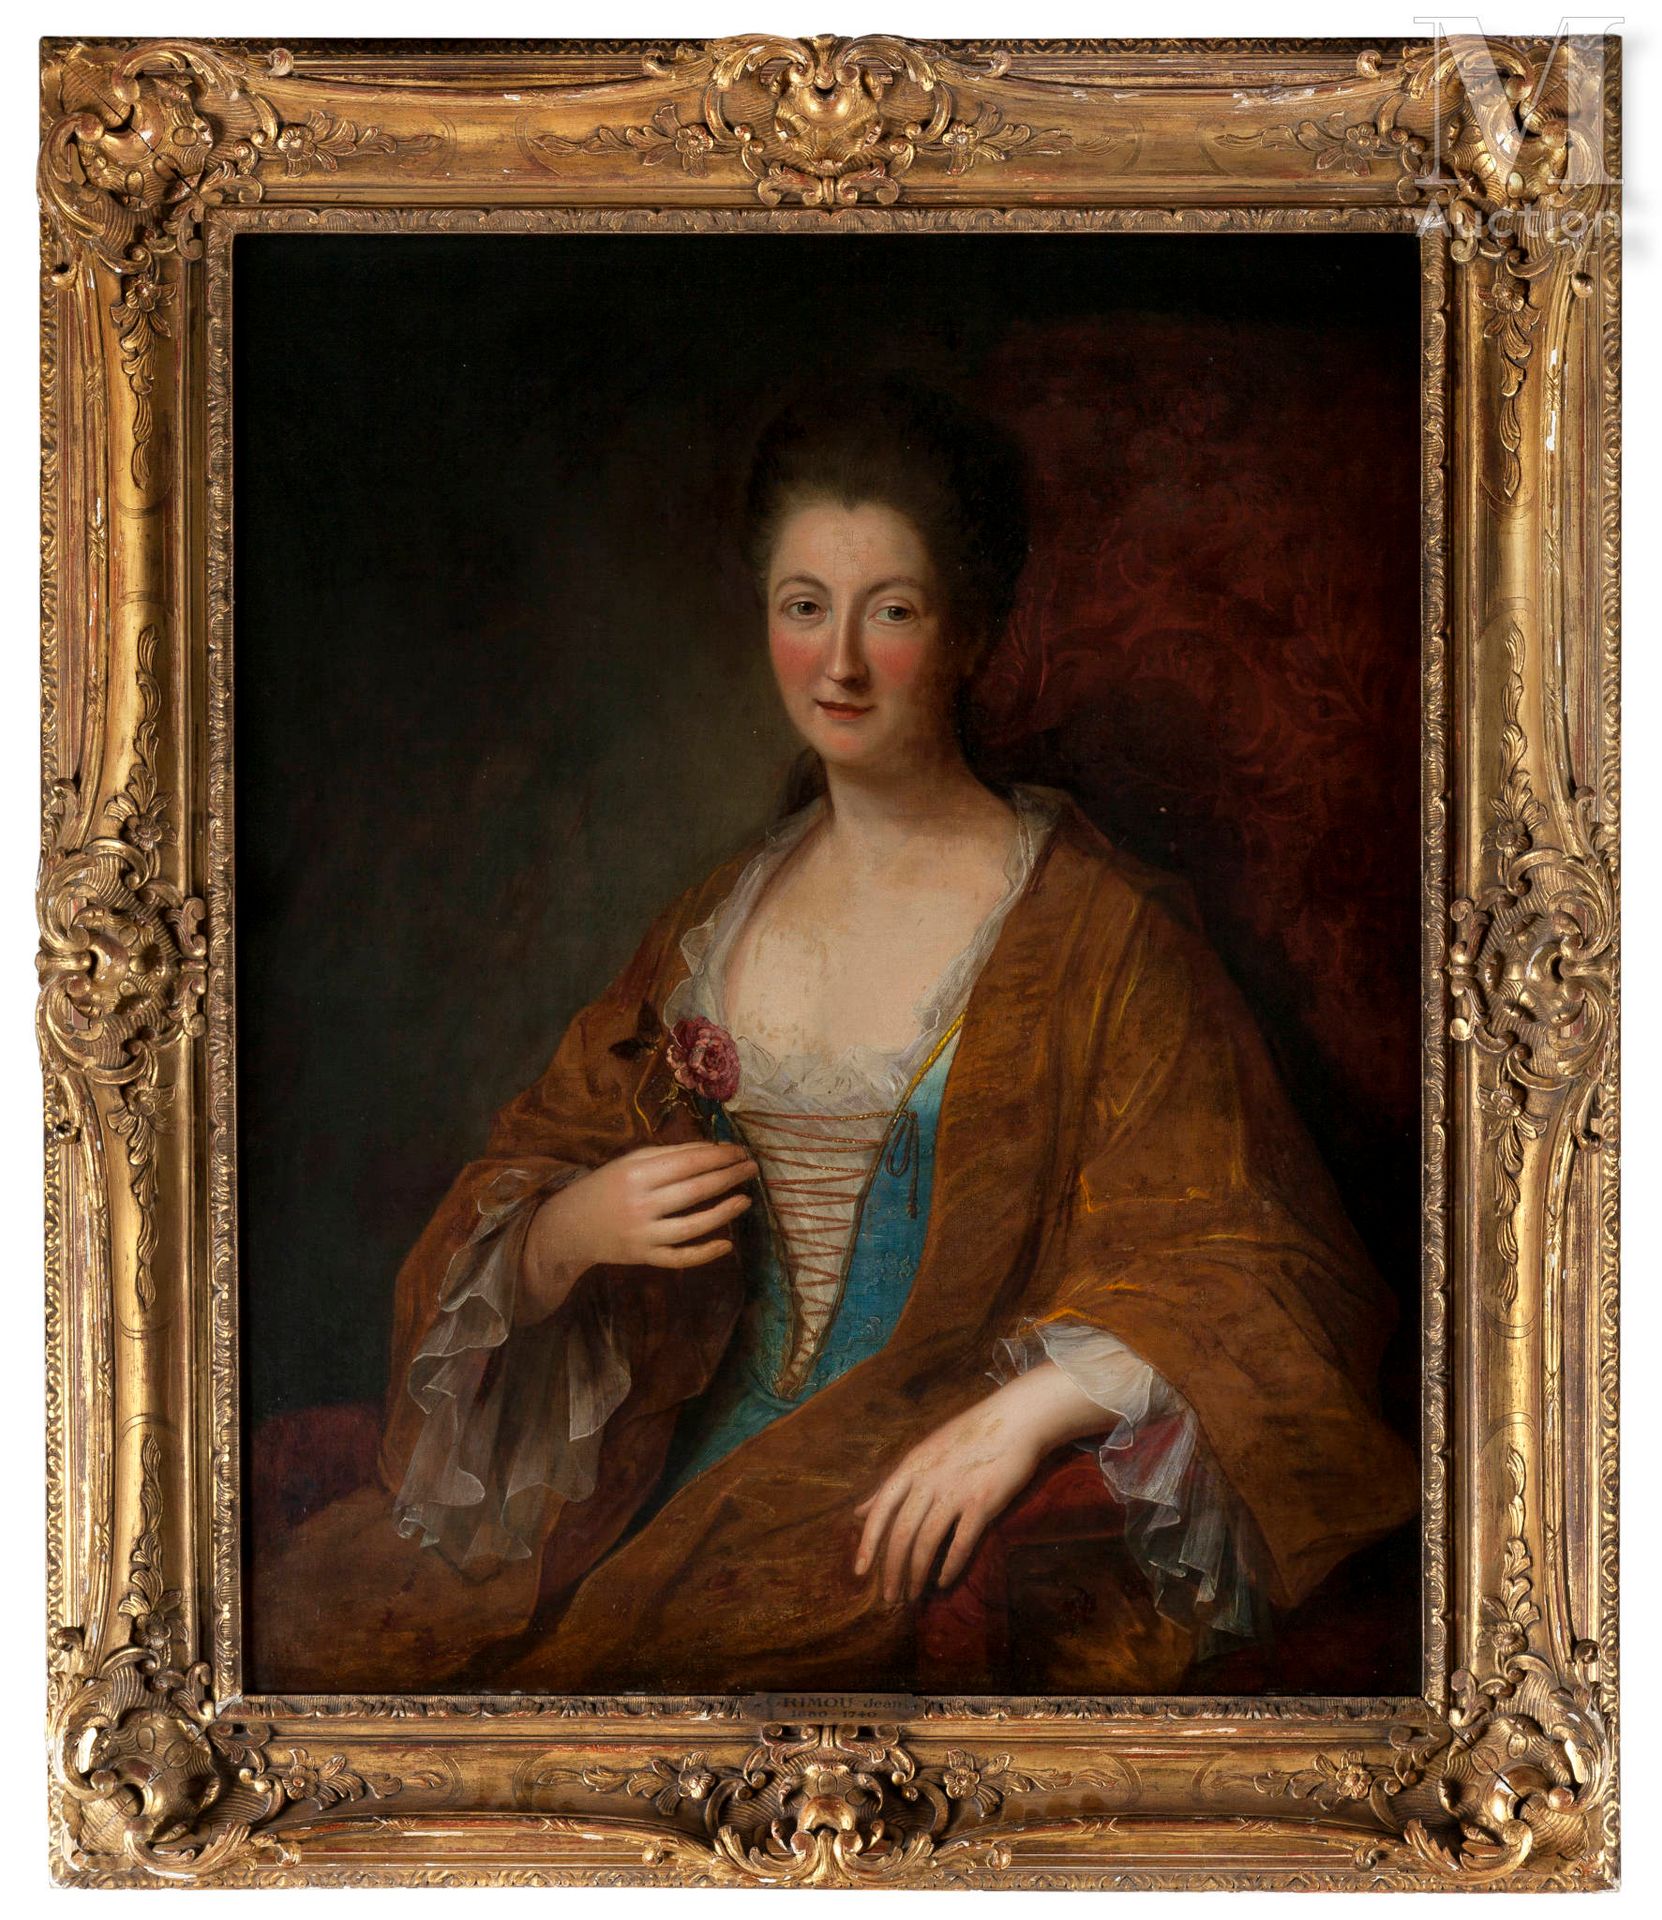 Ecole FRANCAISE vers 1730 Portrait of a woman
Oil on canvas
100 x 80 cm 
Restora&hellip;